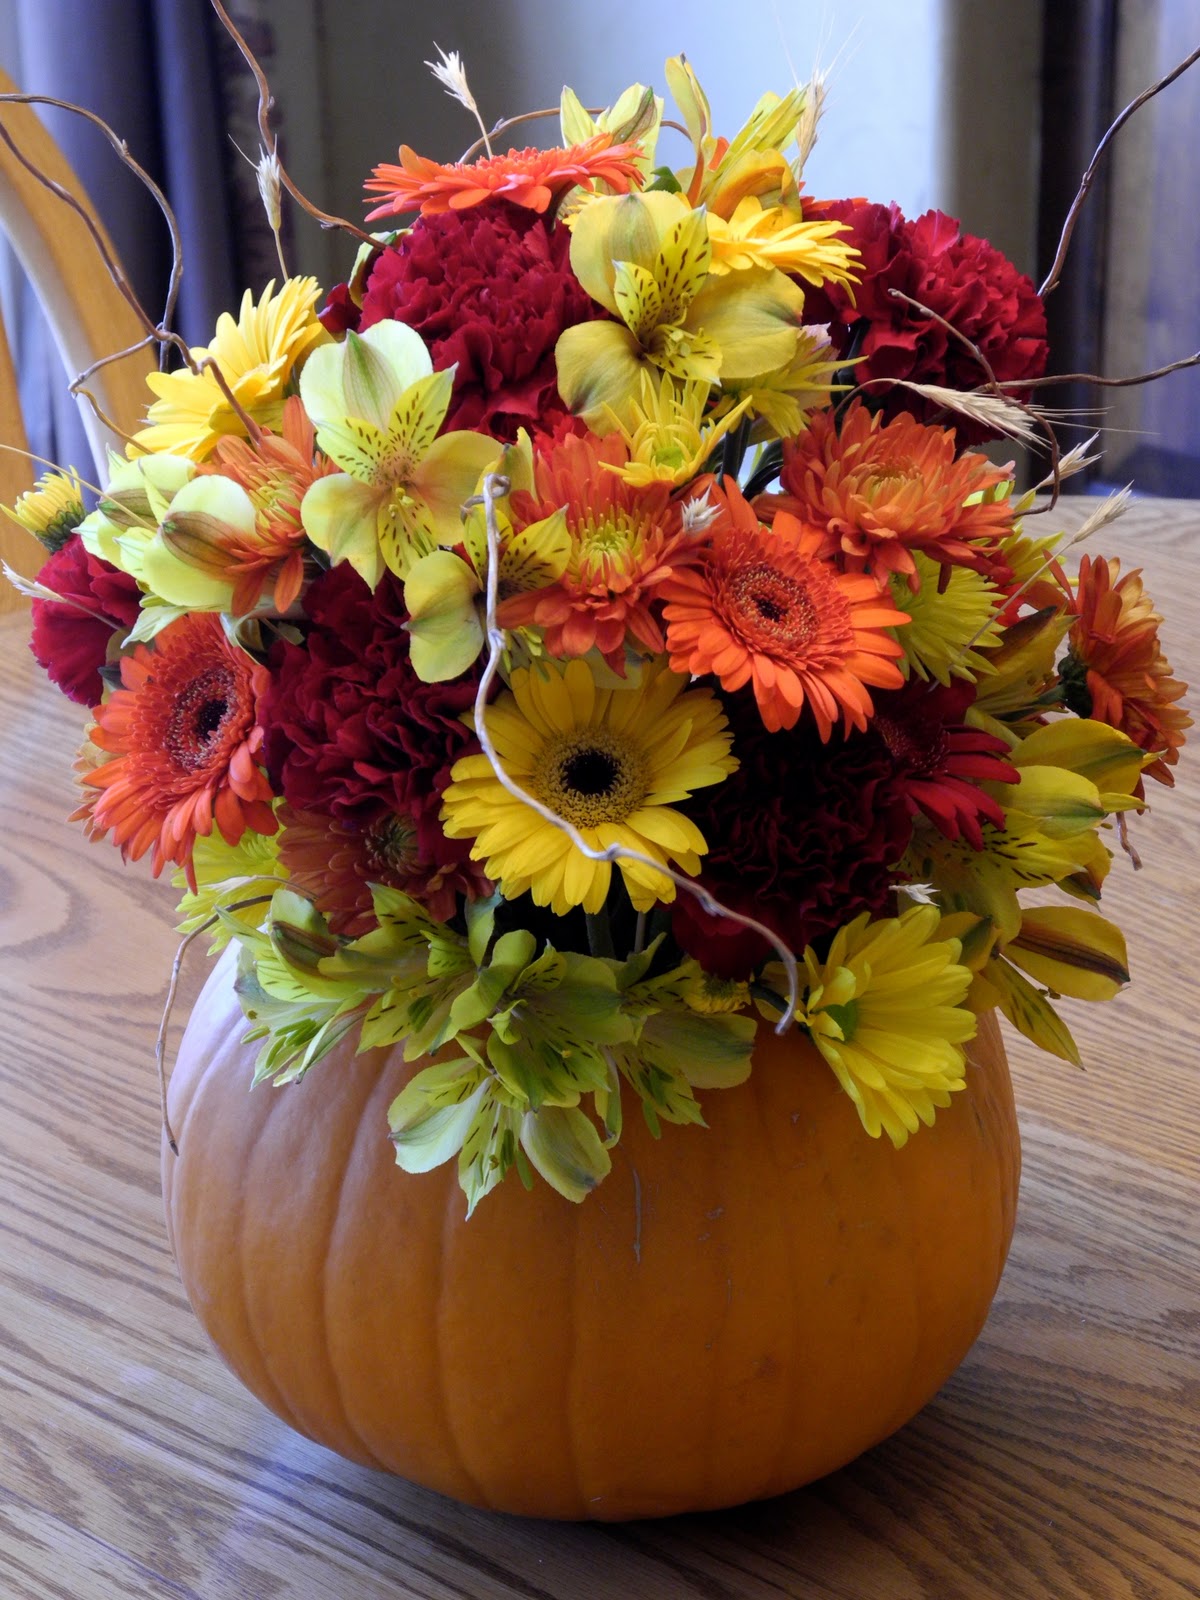 The Flower Girl Blog: fall flowers and a pumpkin